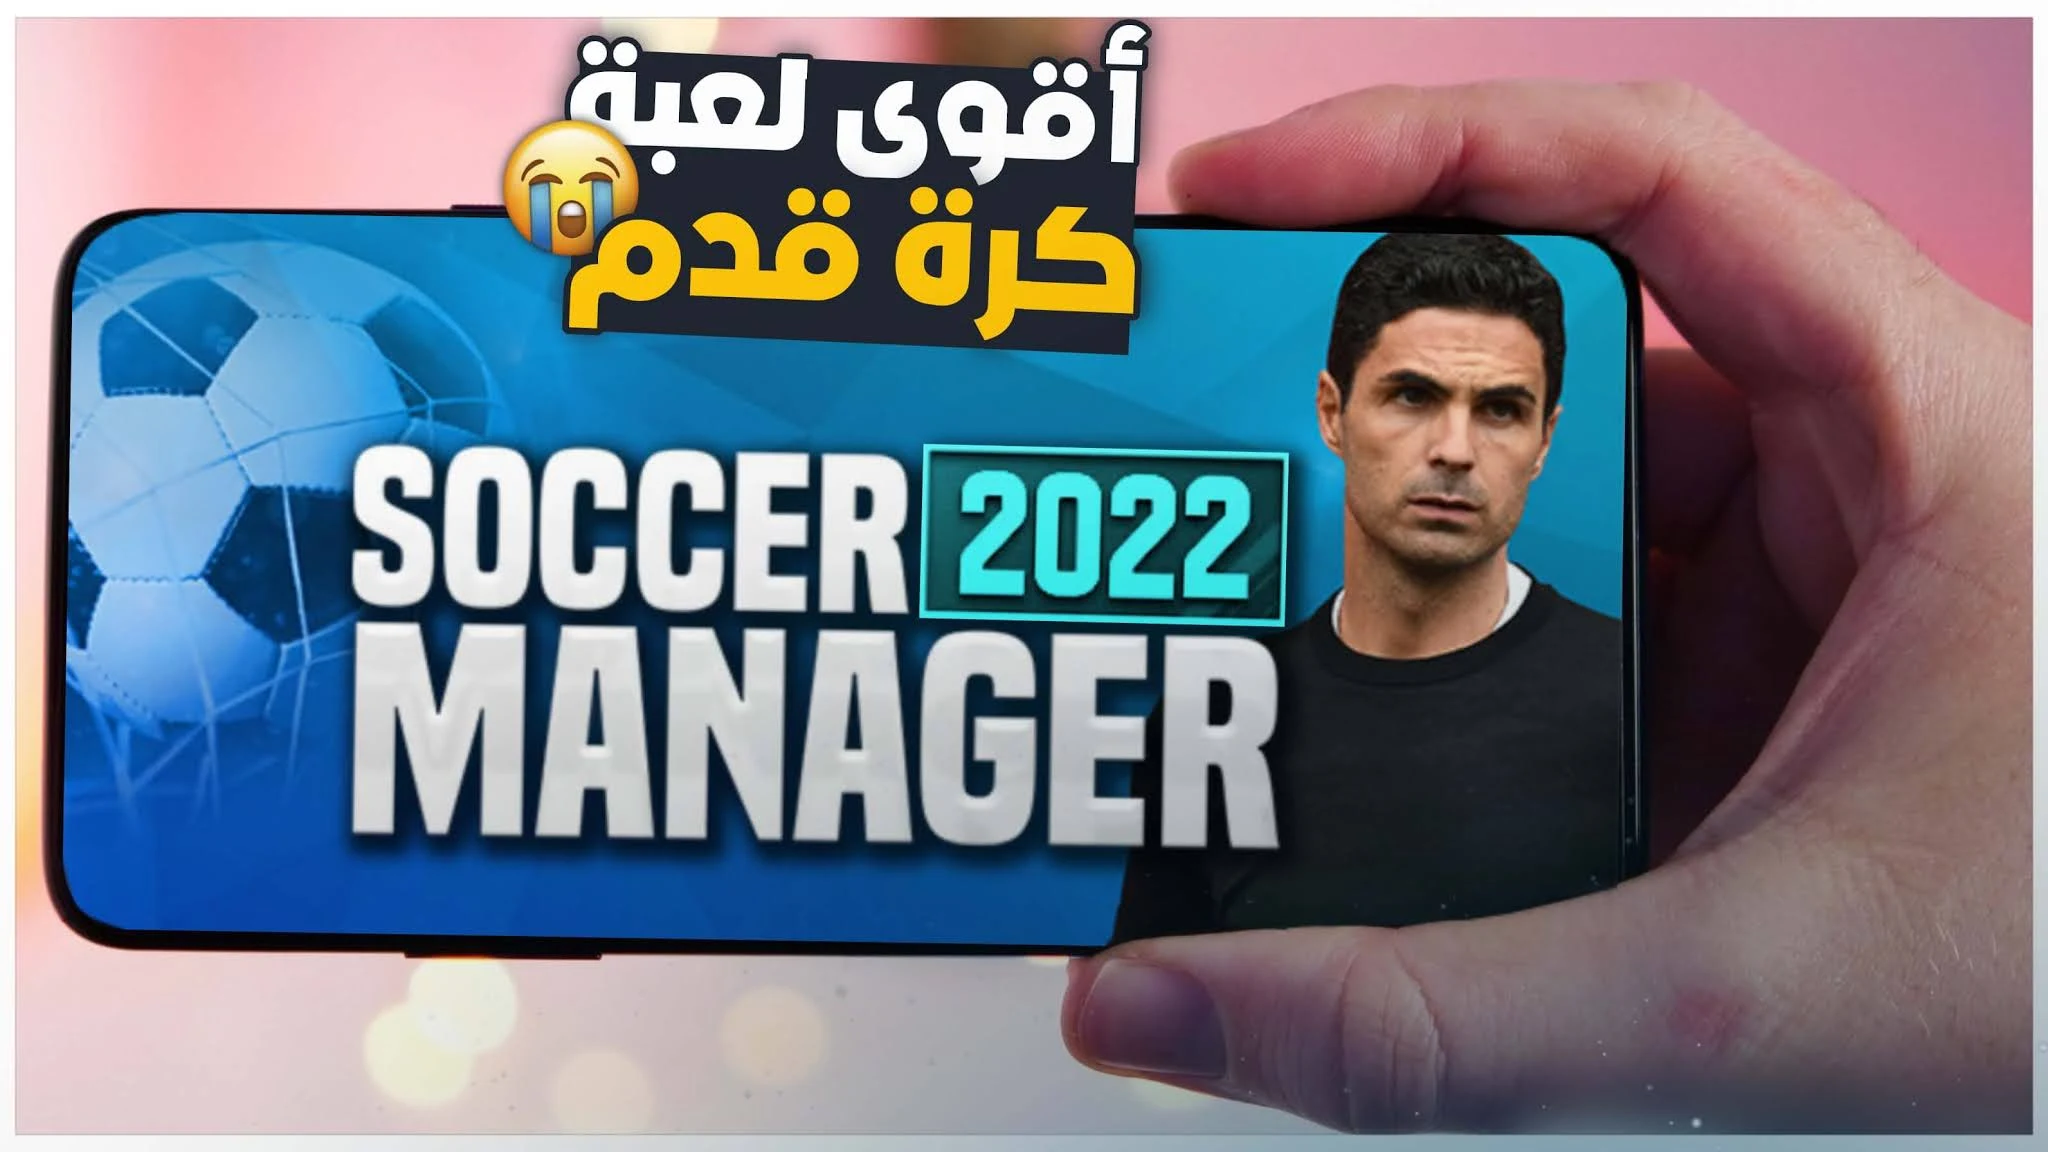 رسميا اطلاق لعبة كرة قدم جديدة اسطورية 2022 للاندرويد والايفون Soccer Manager 2022 APK